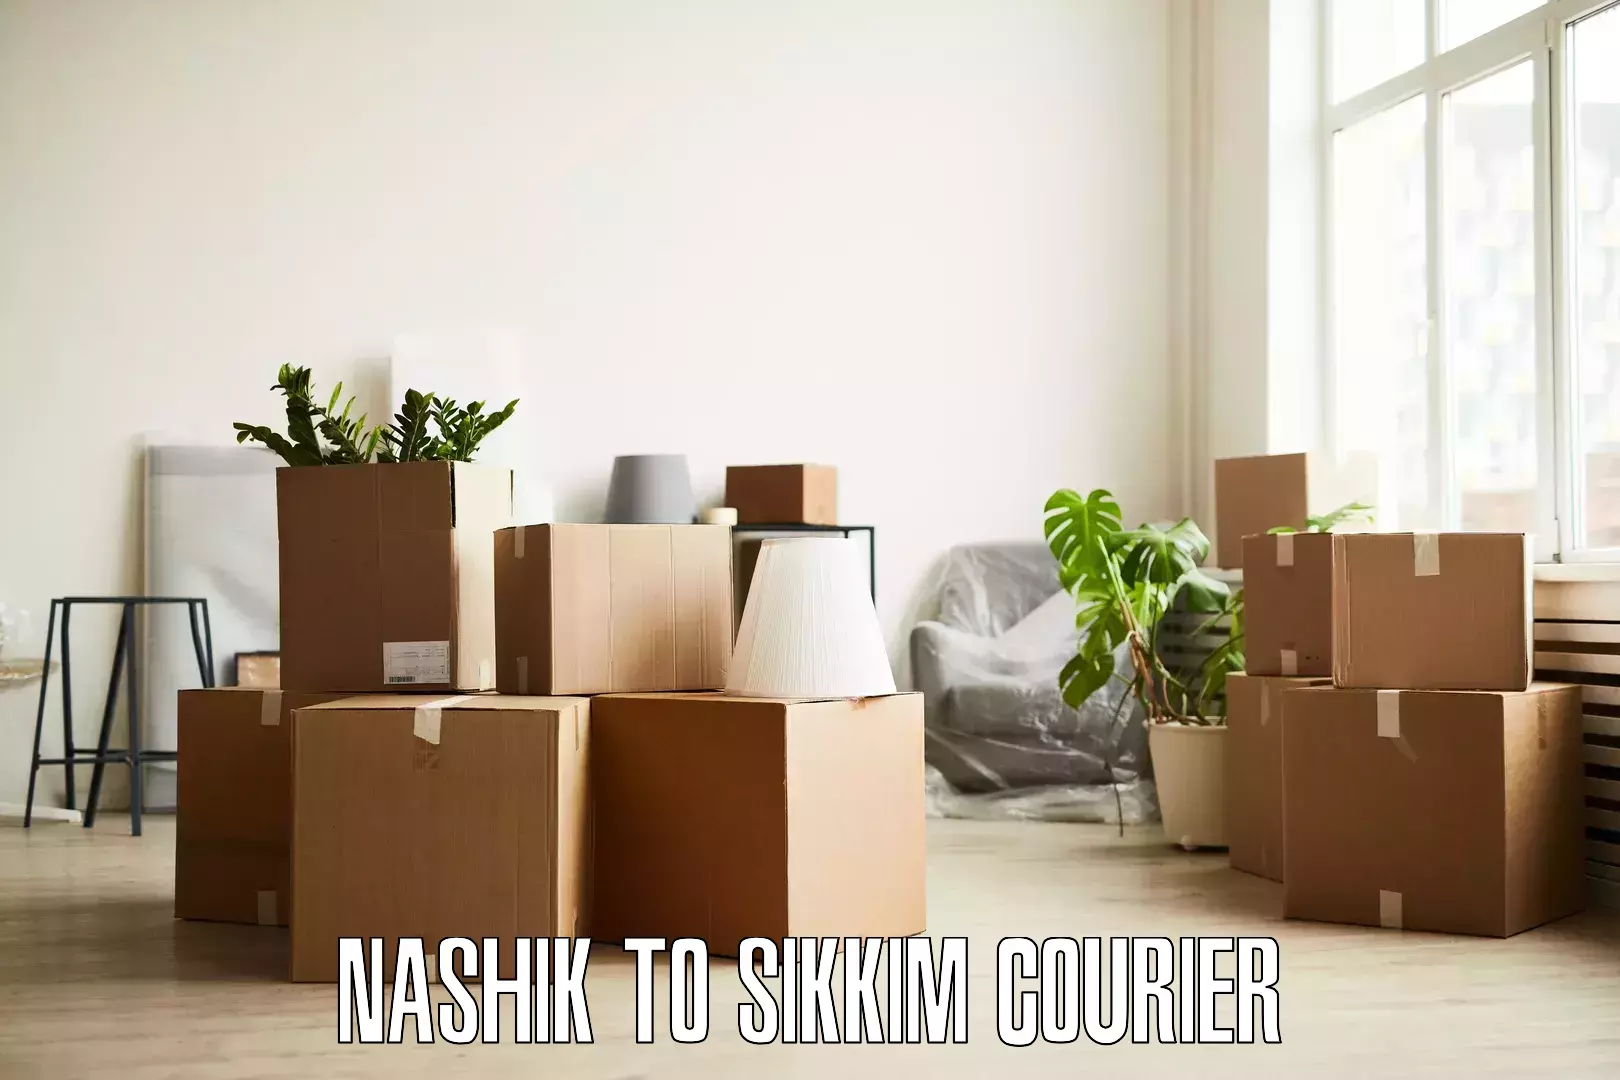 Residential moving experts Nashik to Namchi